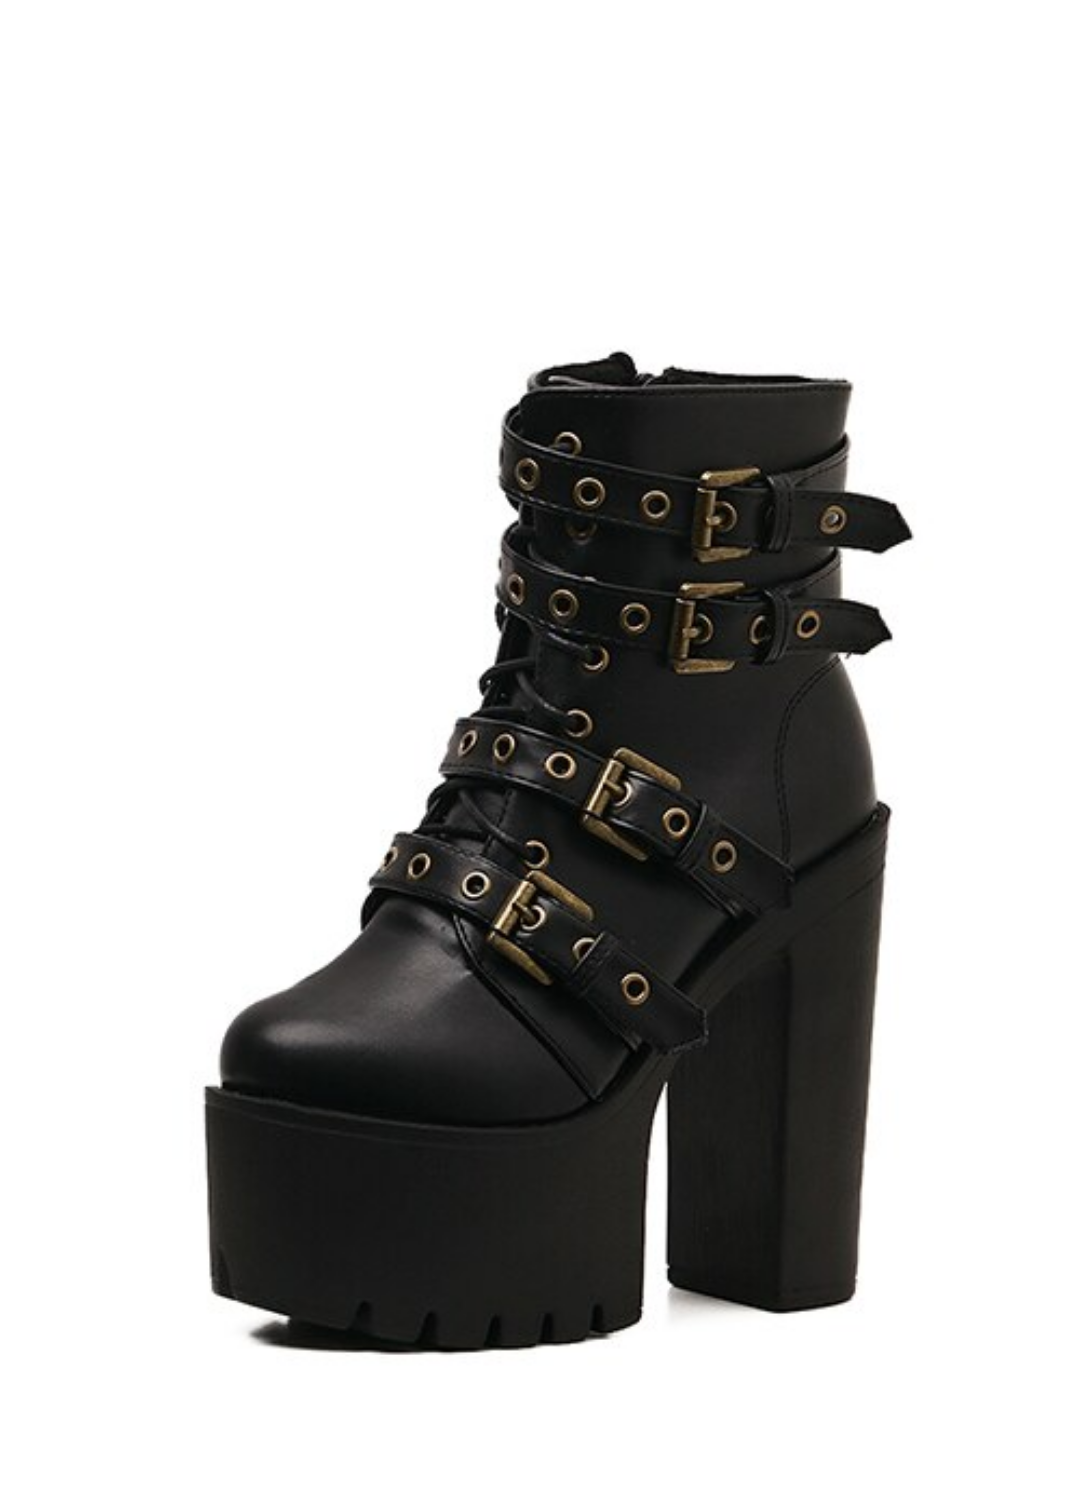 Roswel Women's Black Platform Ankle Boots | Ultrasellershoes.com – USS ...